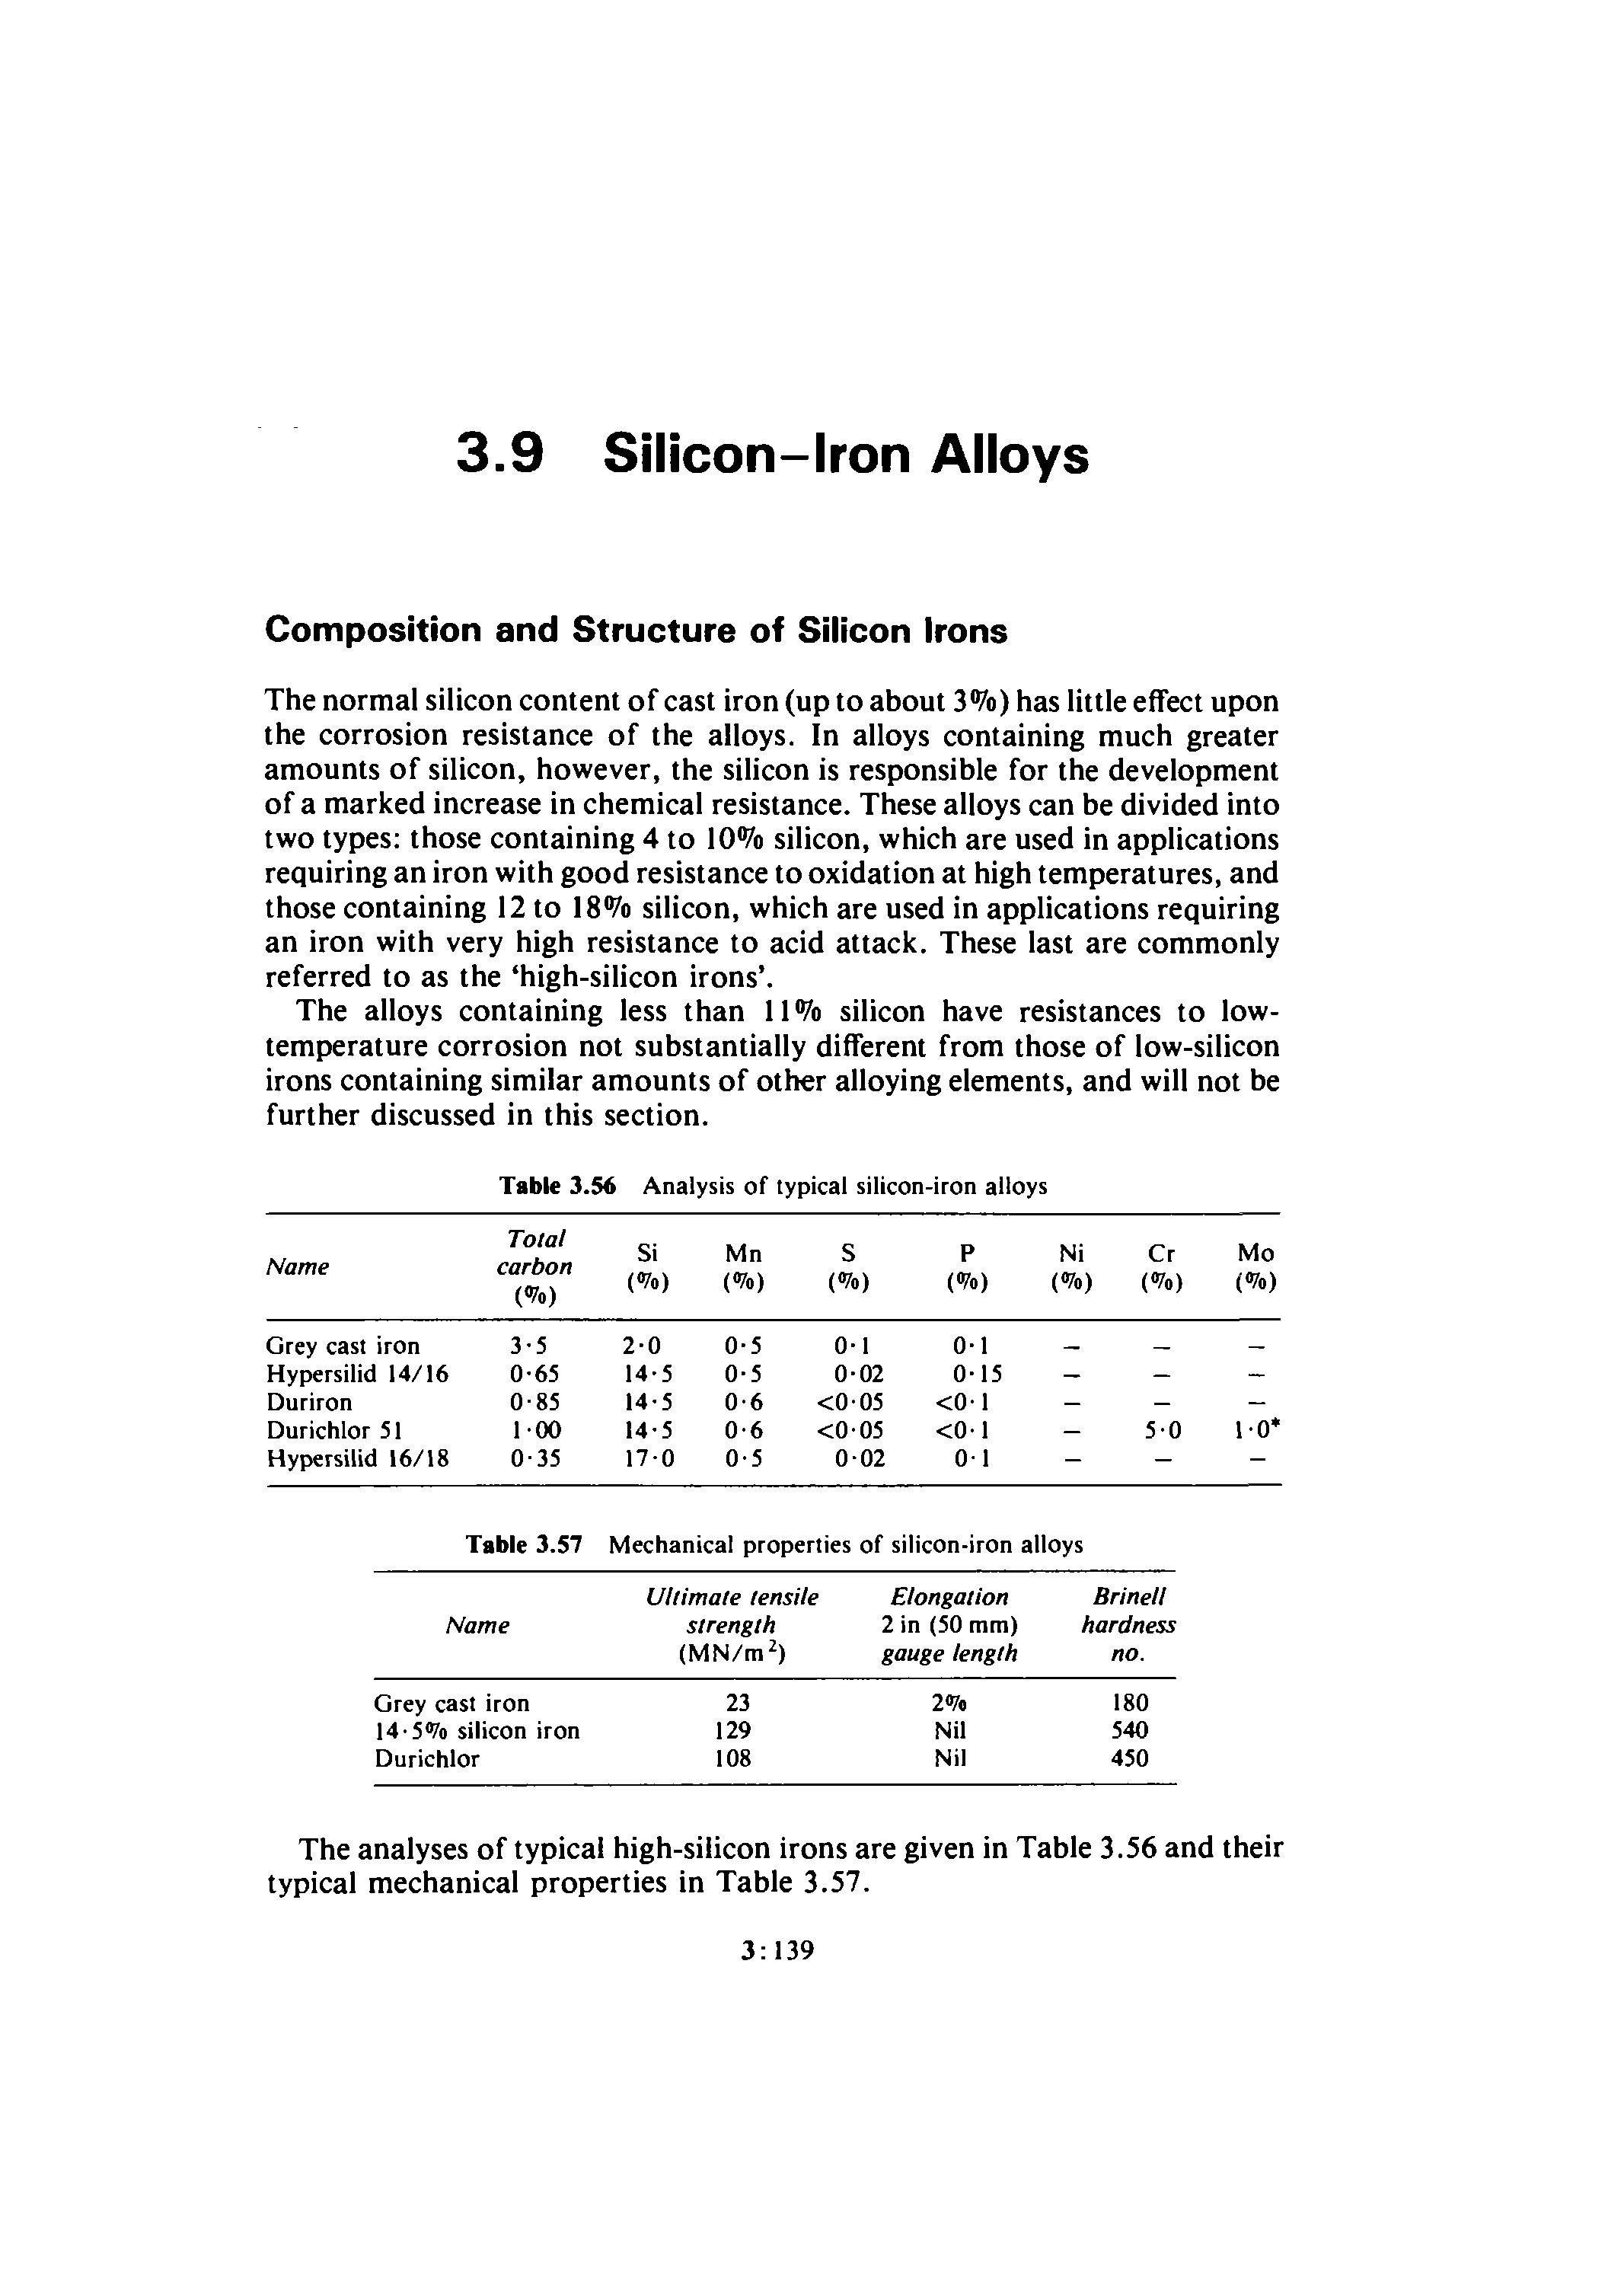 Table 3.56 Analysis of typical silicon-iron alloys...